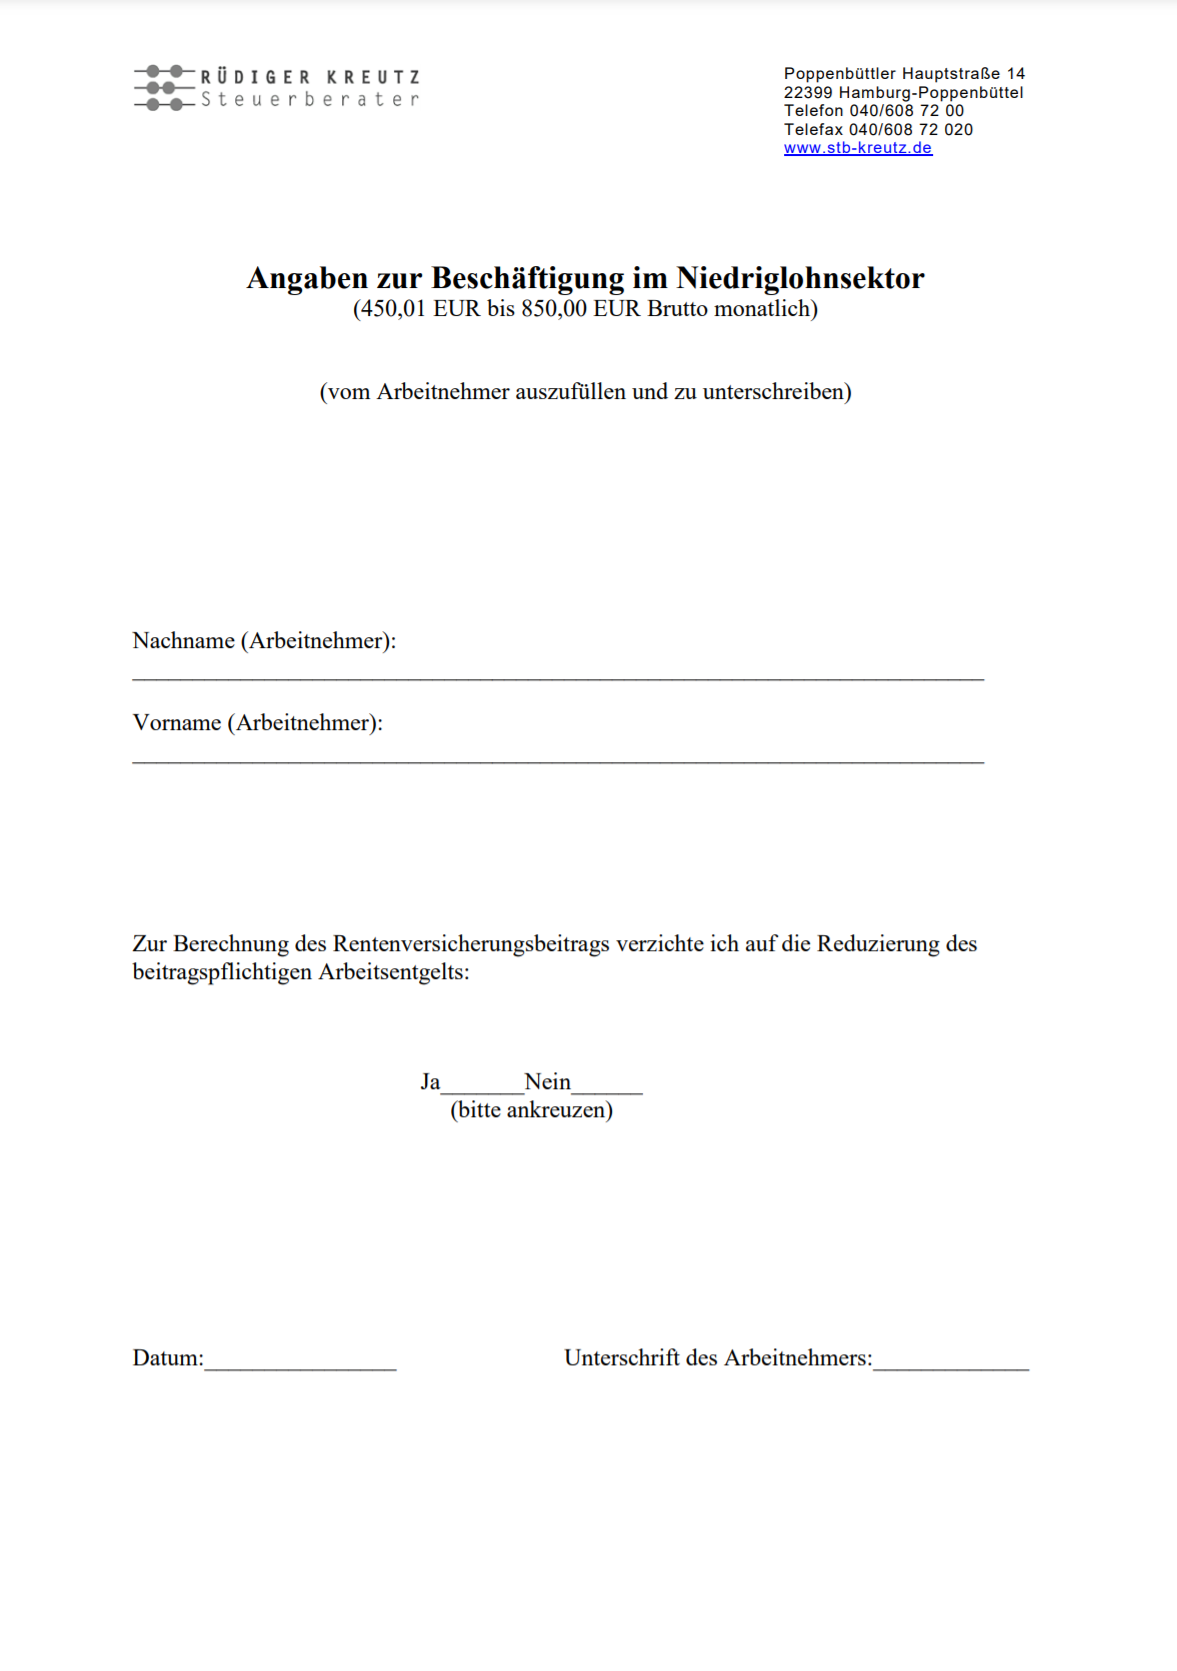 Angaben zur Beschäftigung im Niedriglohnsektor - Rüdiger Kreutz Steuerberater seit 2009 in Hamburg